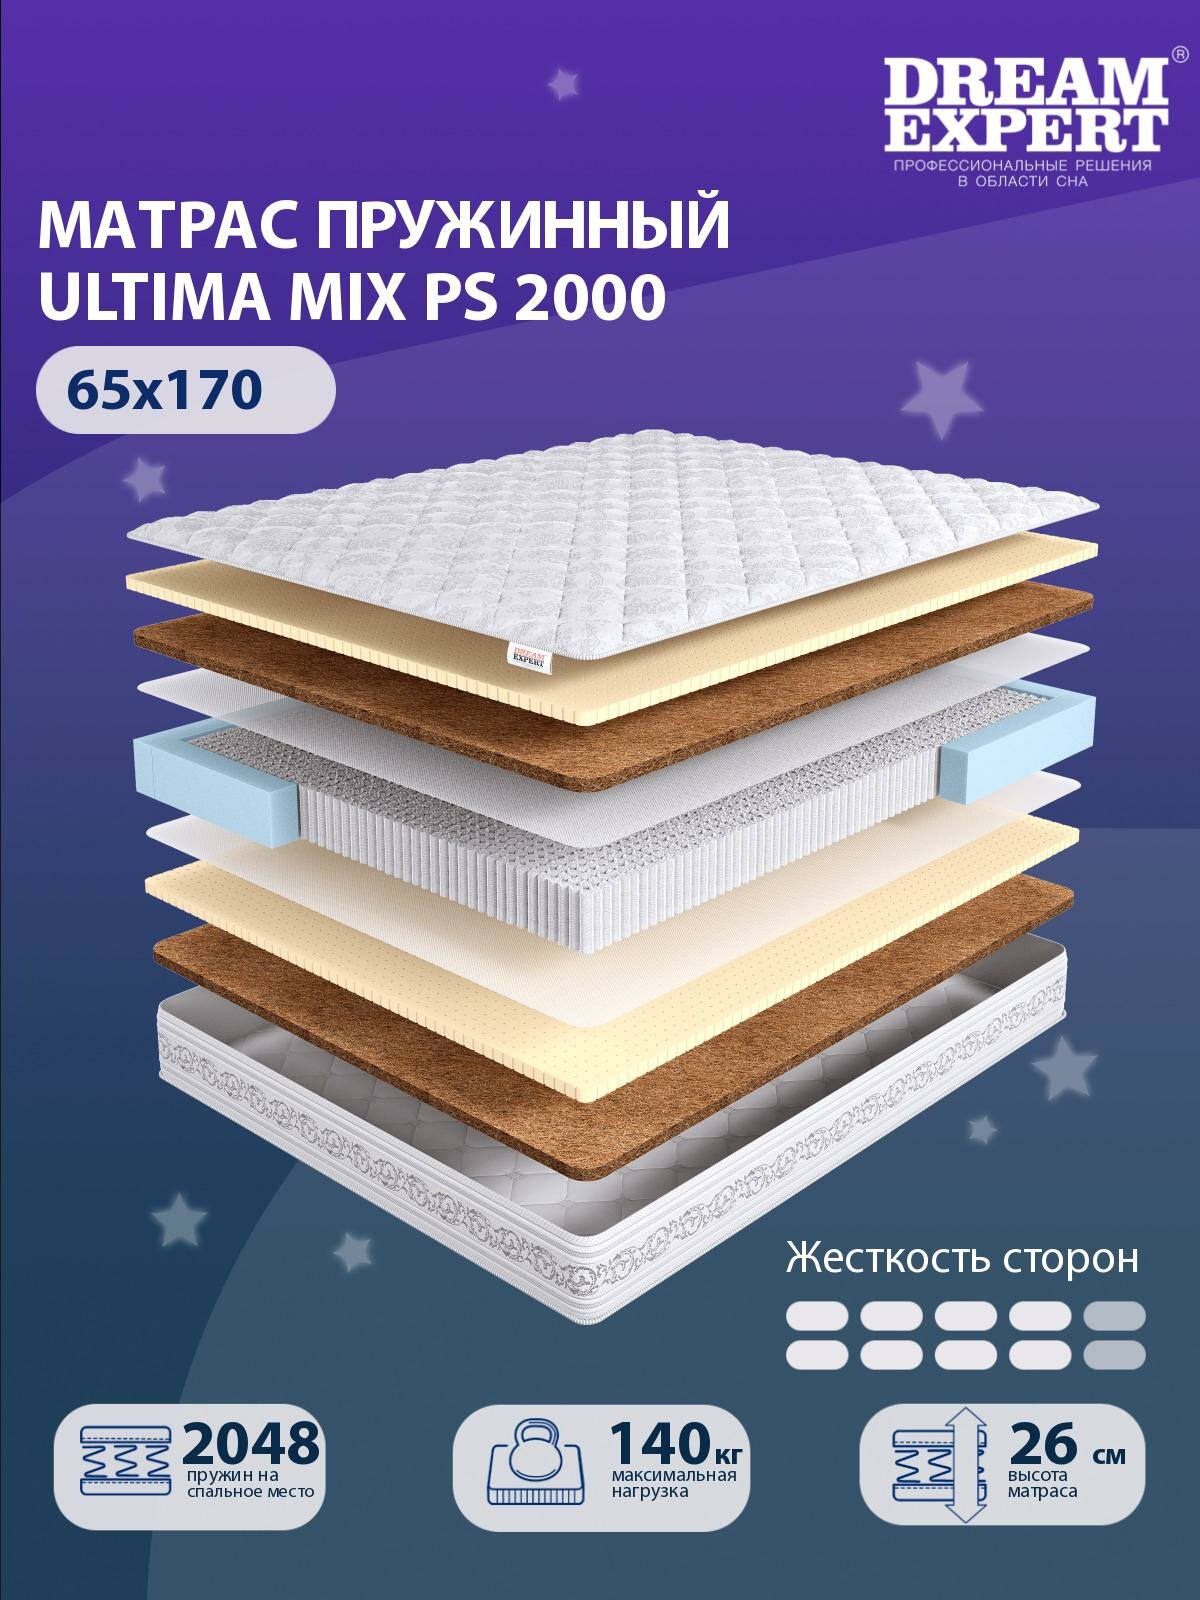 Матрас DreamExpert Ultima MIX PS2000 выше средней жесткости, детский, независимый пружинный блок, на кровать 65x170